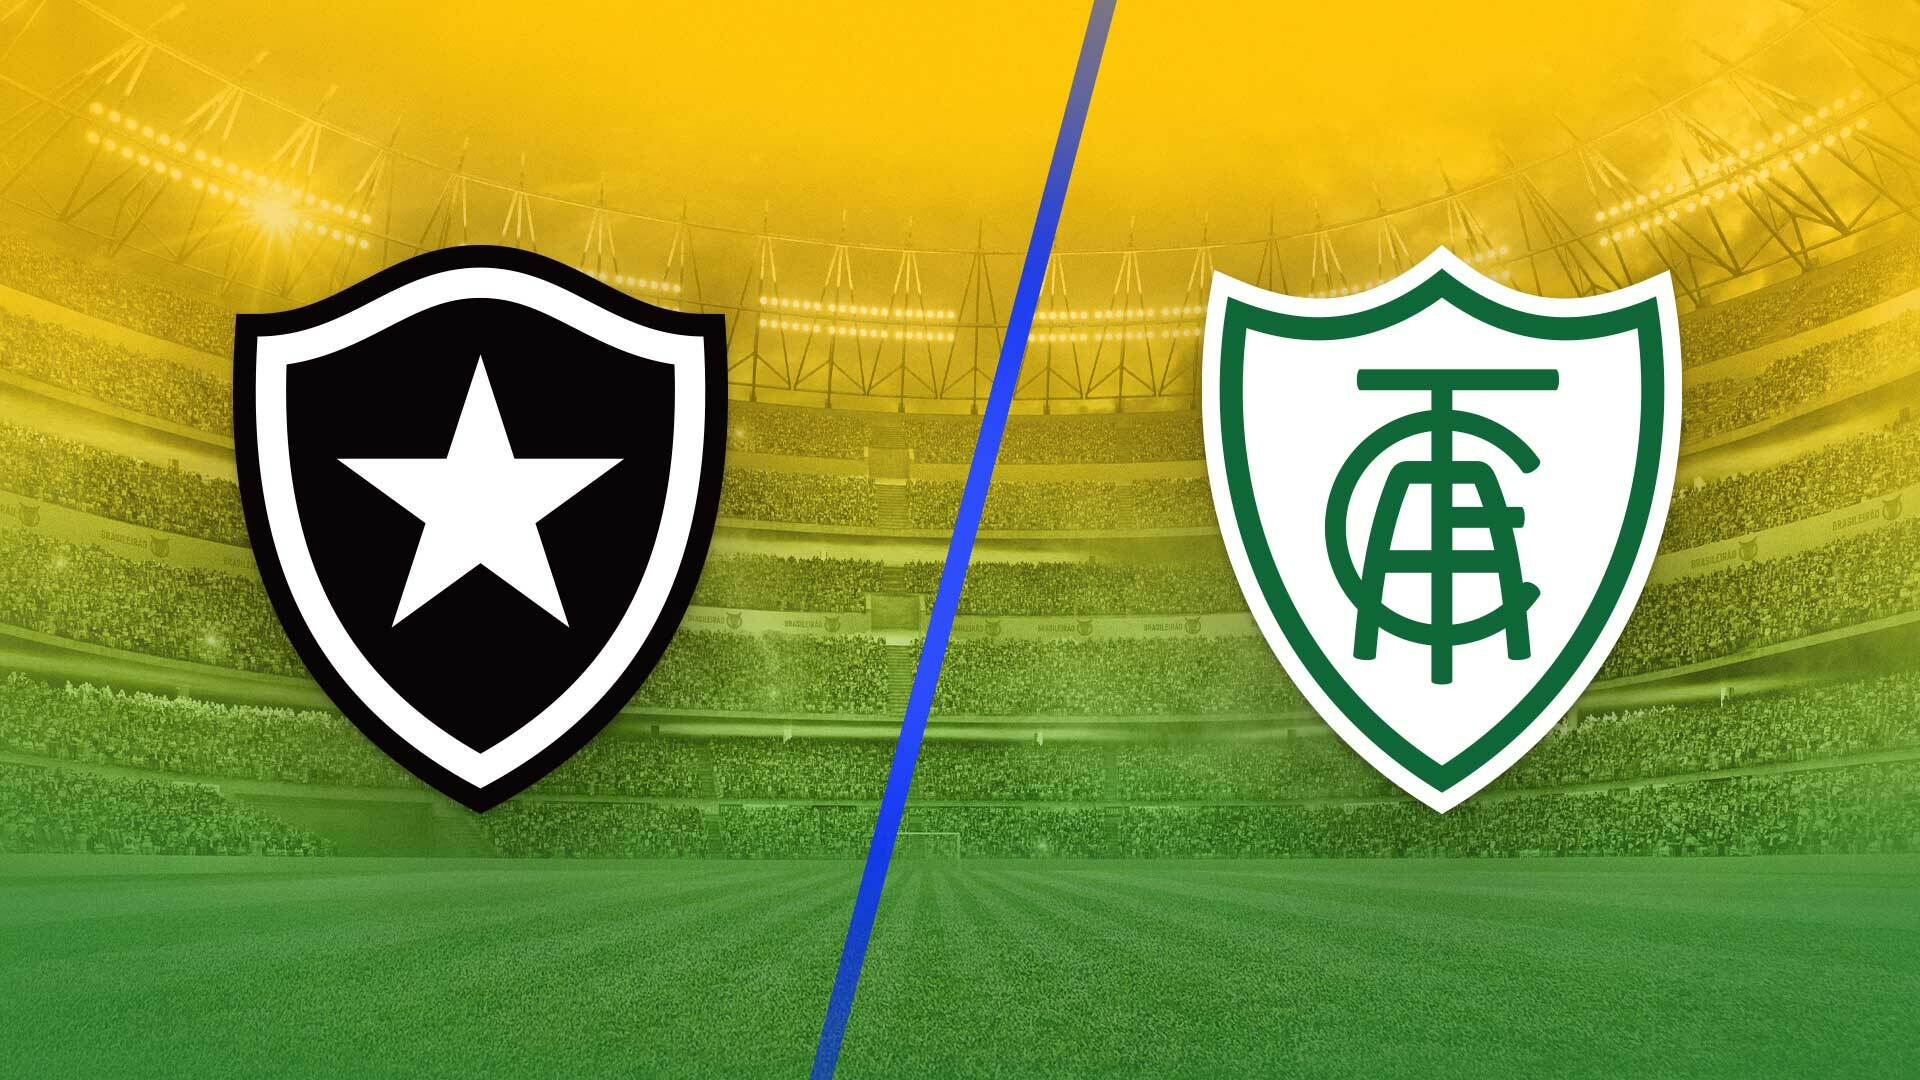 Grêmio x Brasil de Pelotas: A Rivalry of Rio Grande do Sul